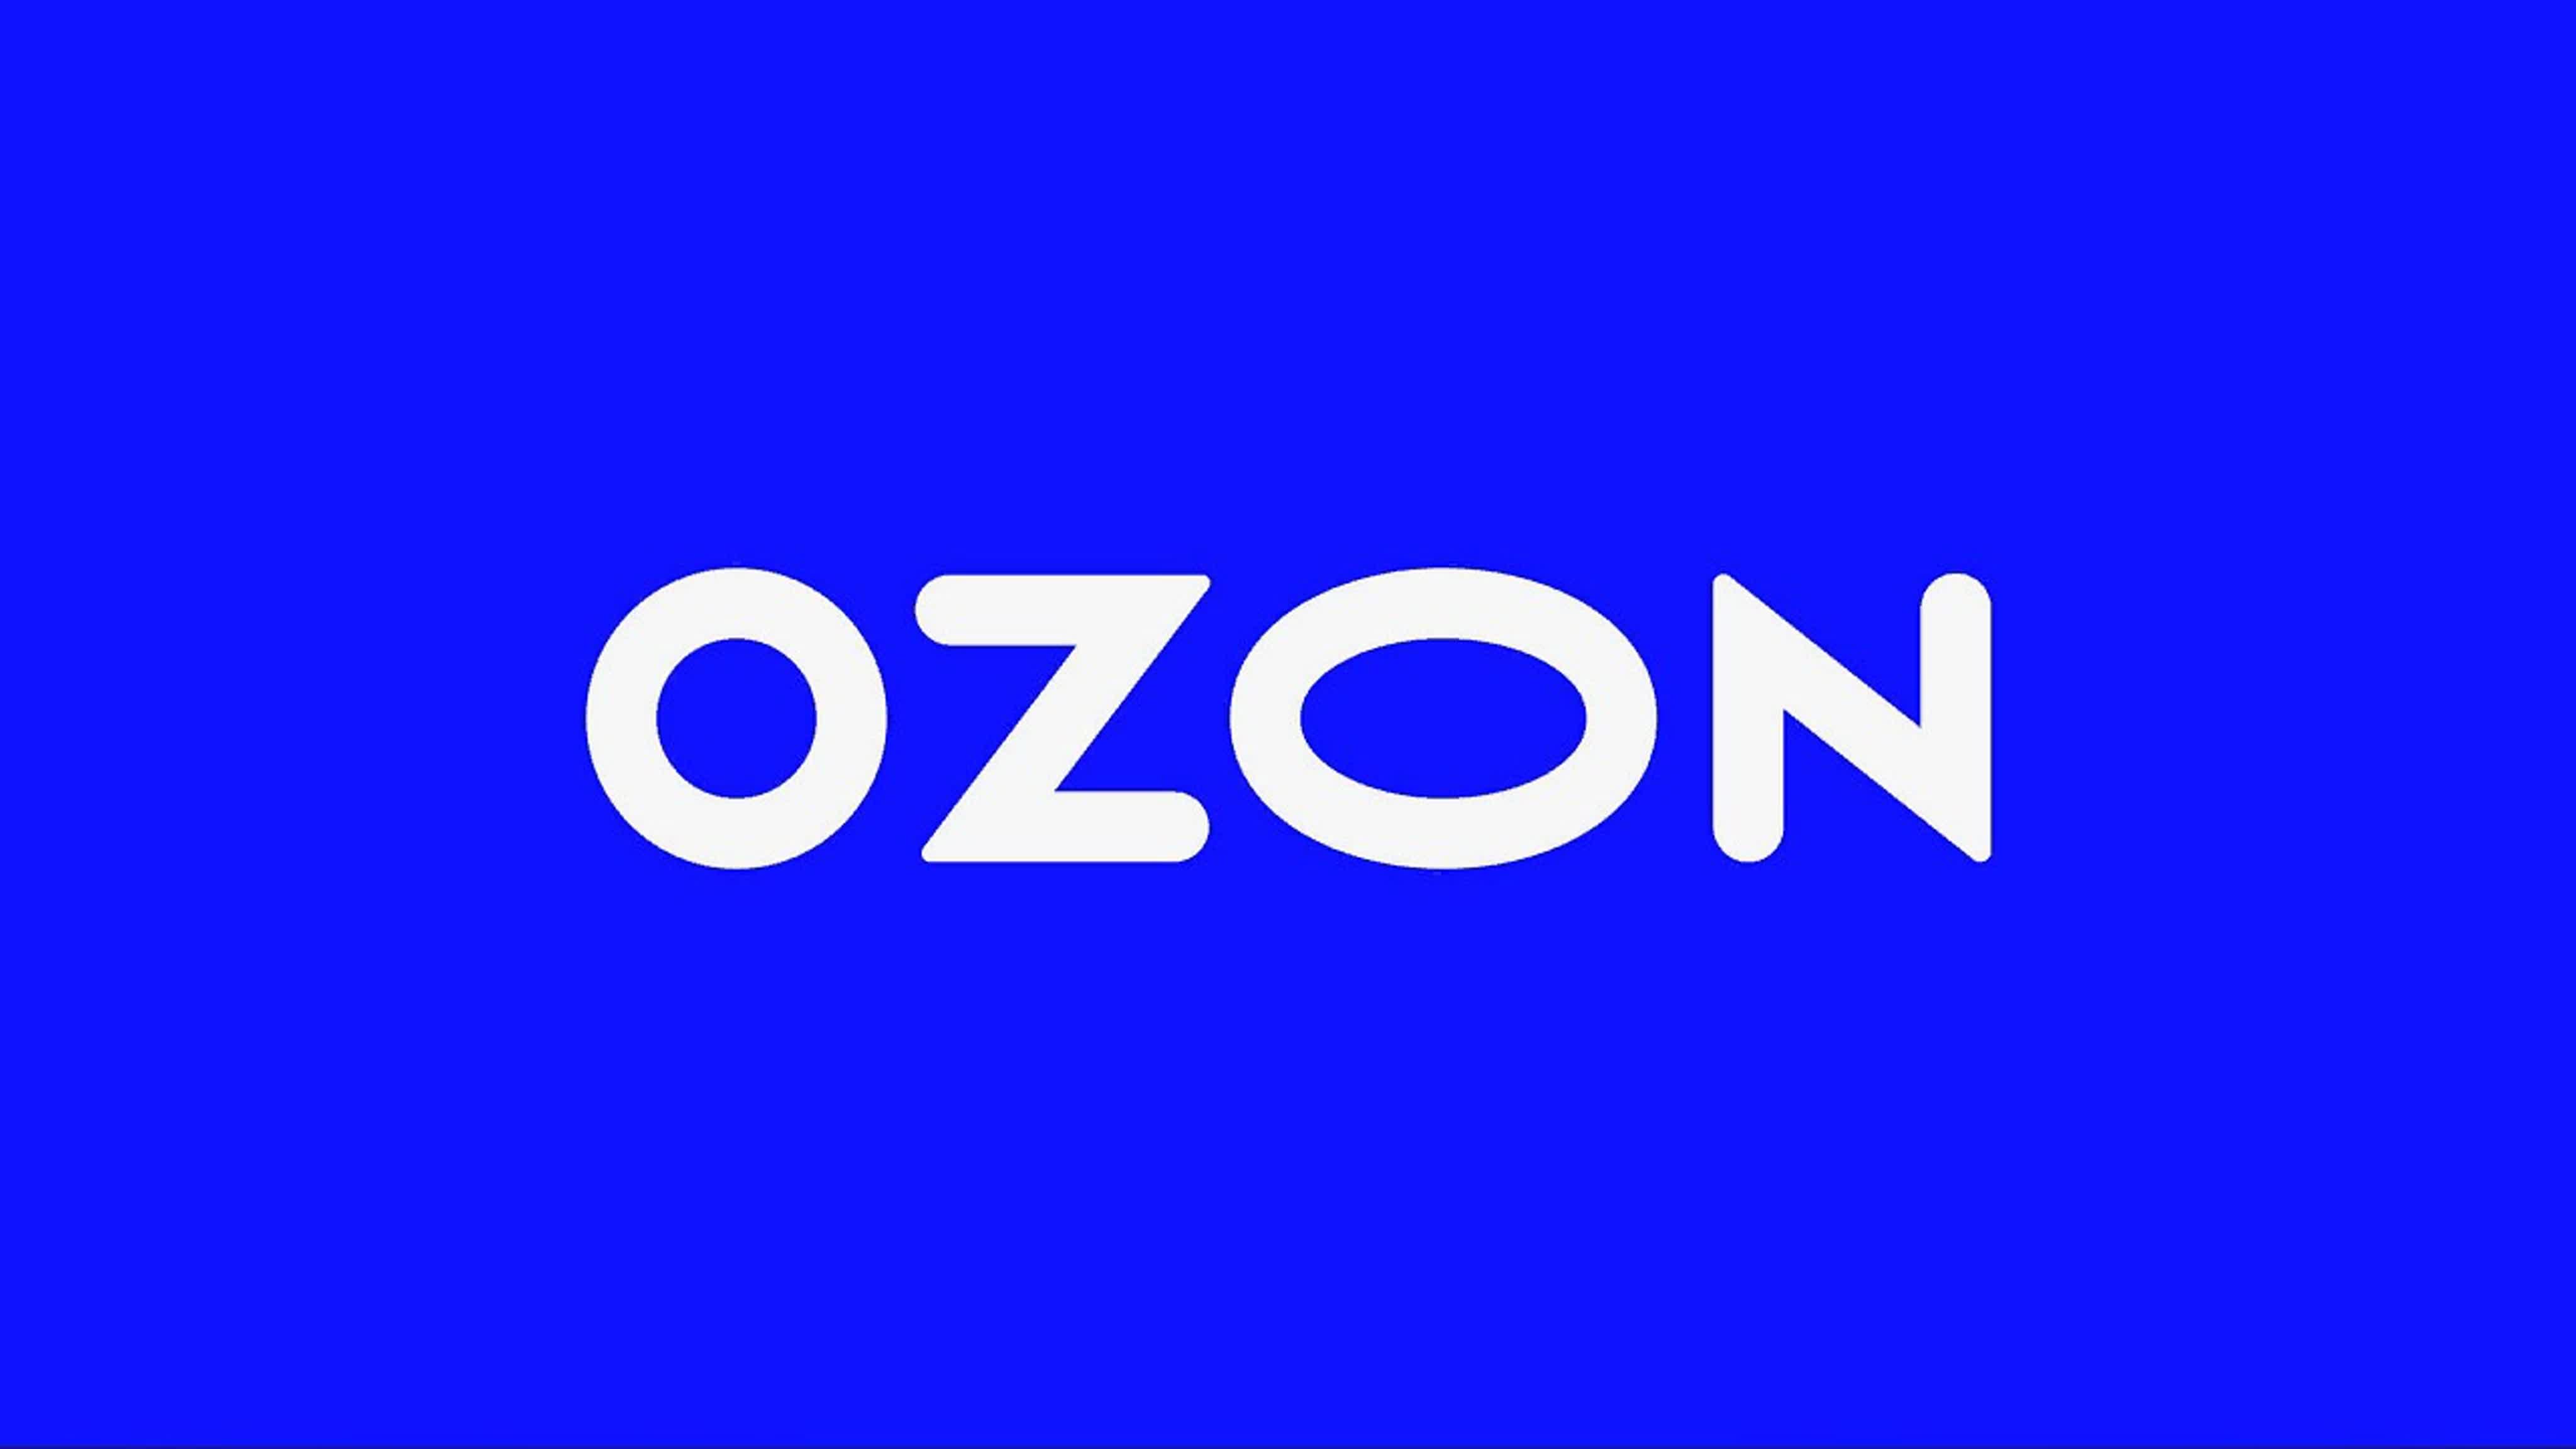 Озон р интернет магазин. Озон. Реклама Озон. OZON эмблема. Цвета OZON.